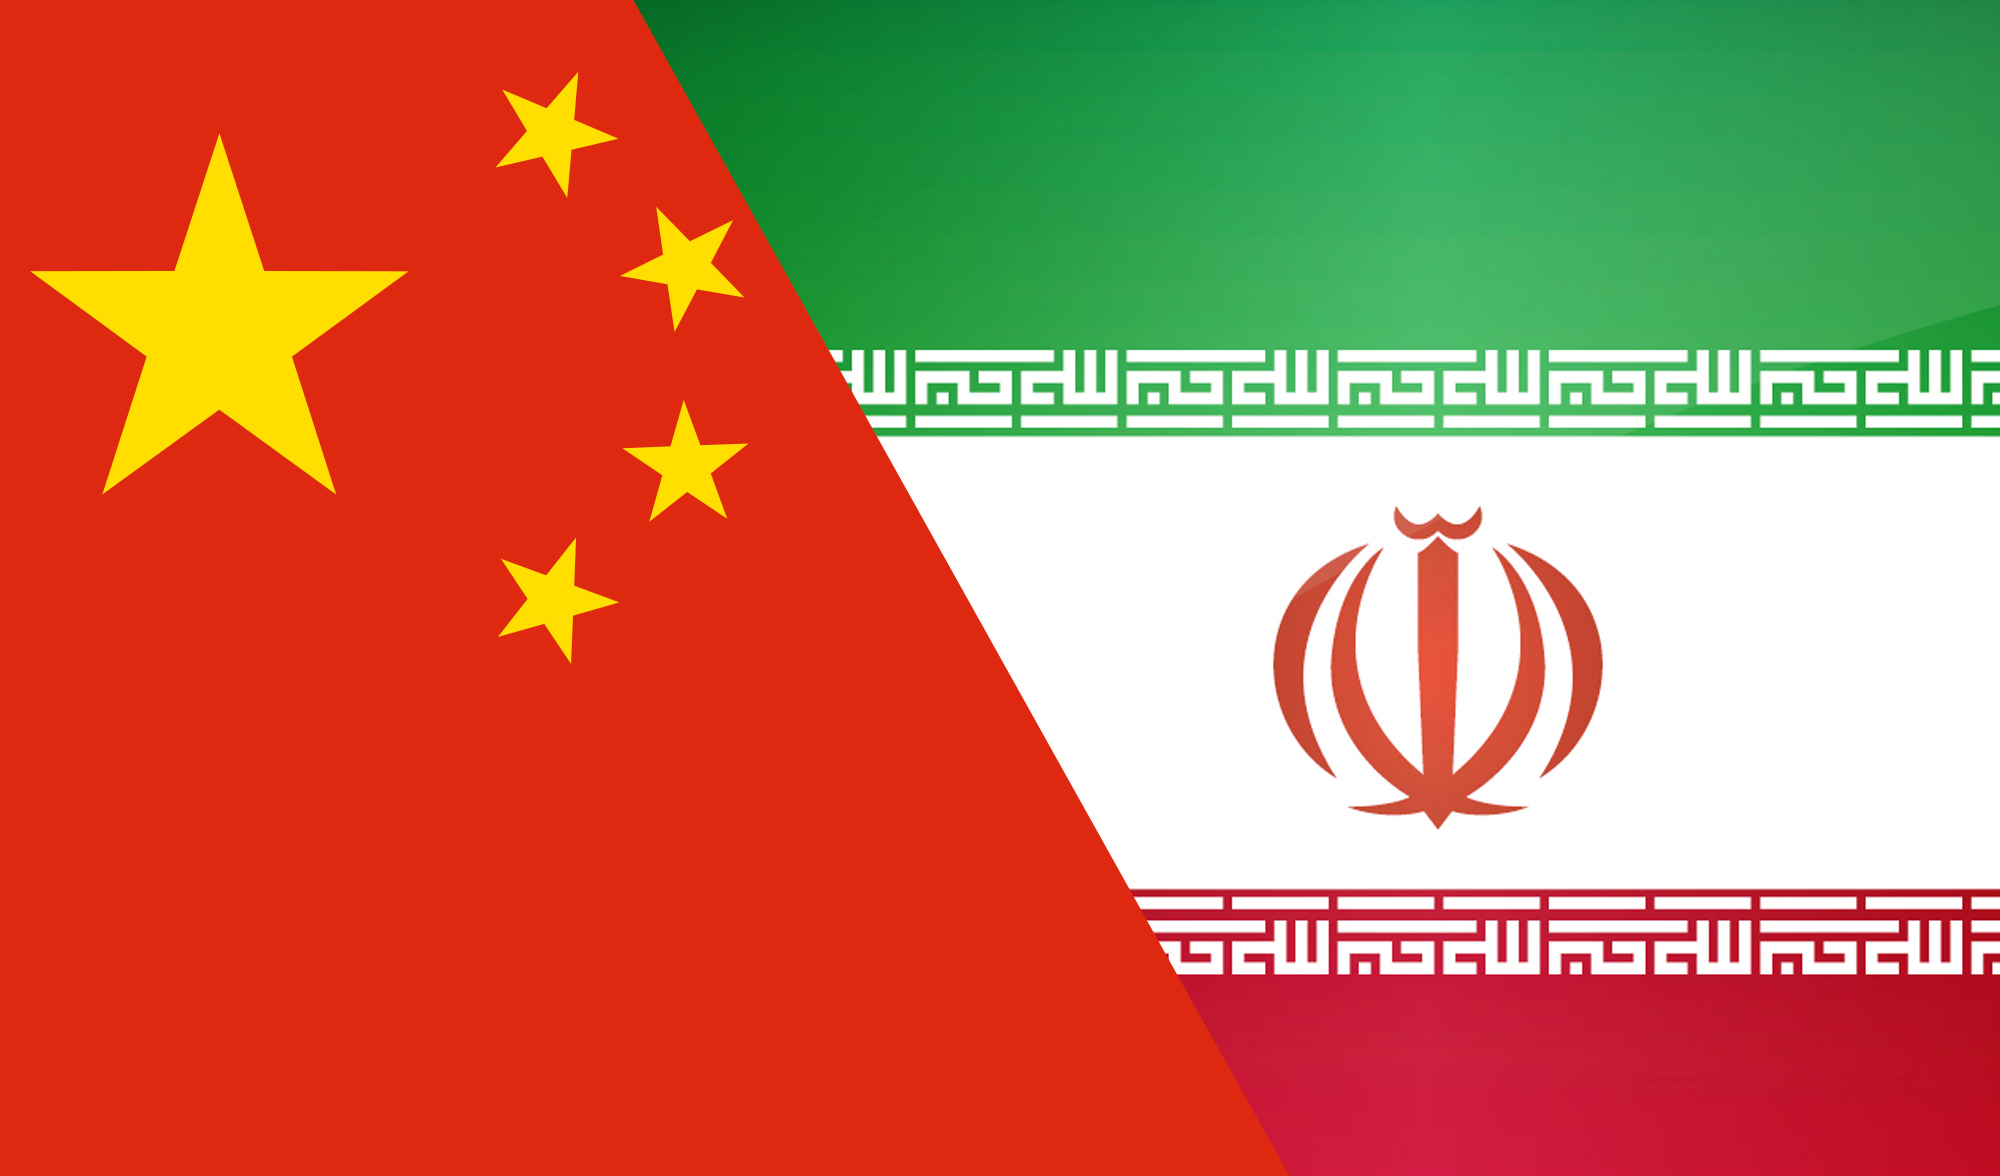 تاکید سفیر ایران در چین بر ارتقا روابط تهران - پکن